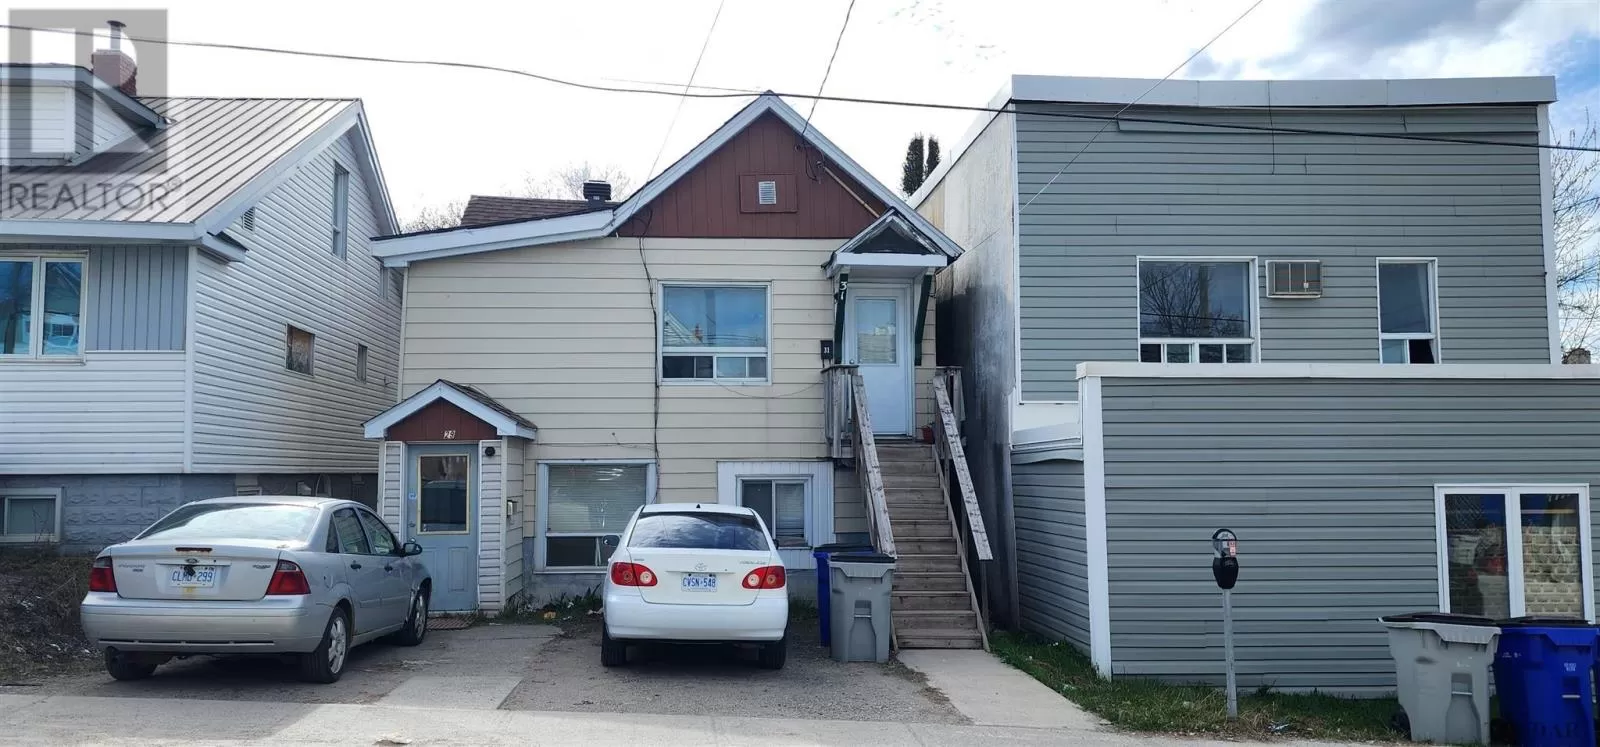 Duplex for rent: 29-31 Birch St N, Timmins, Ontario P4N 6C8